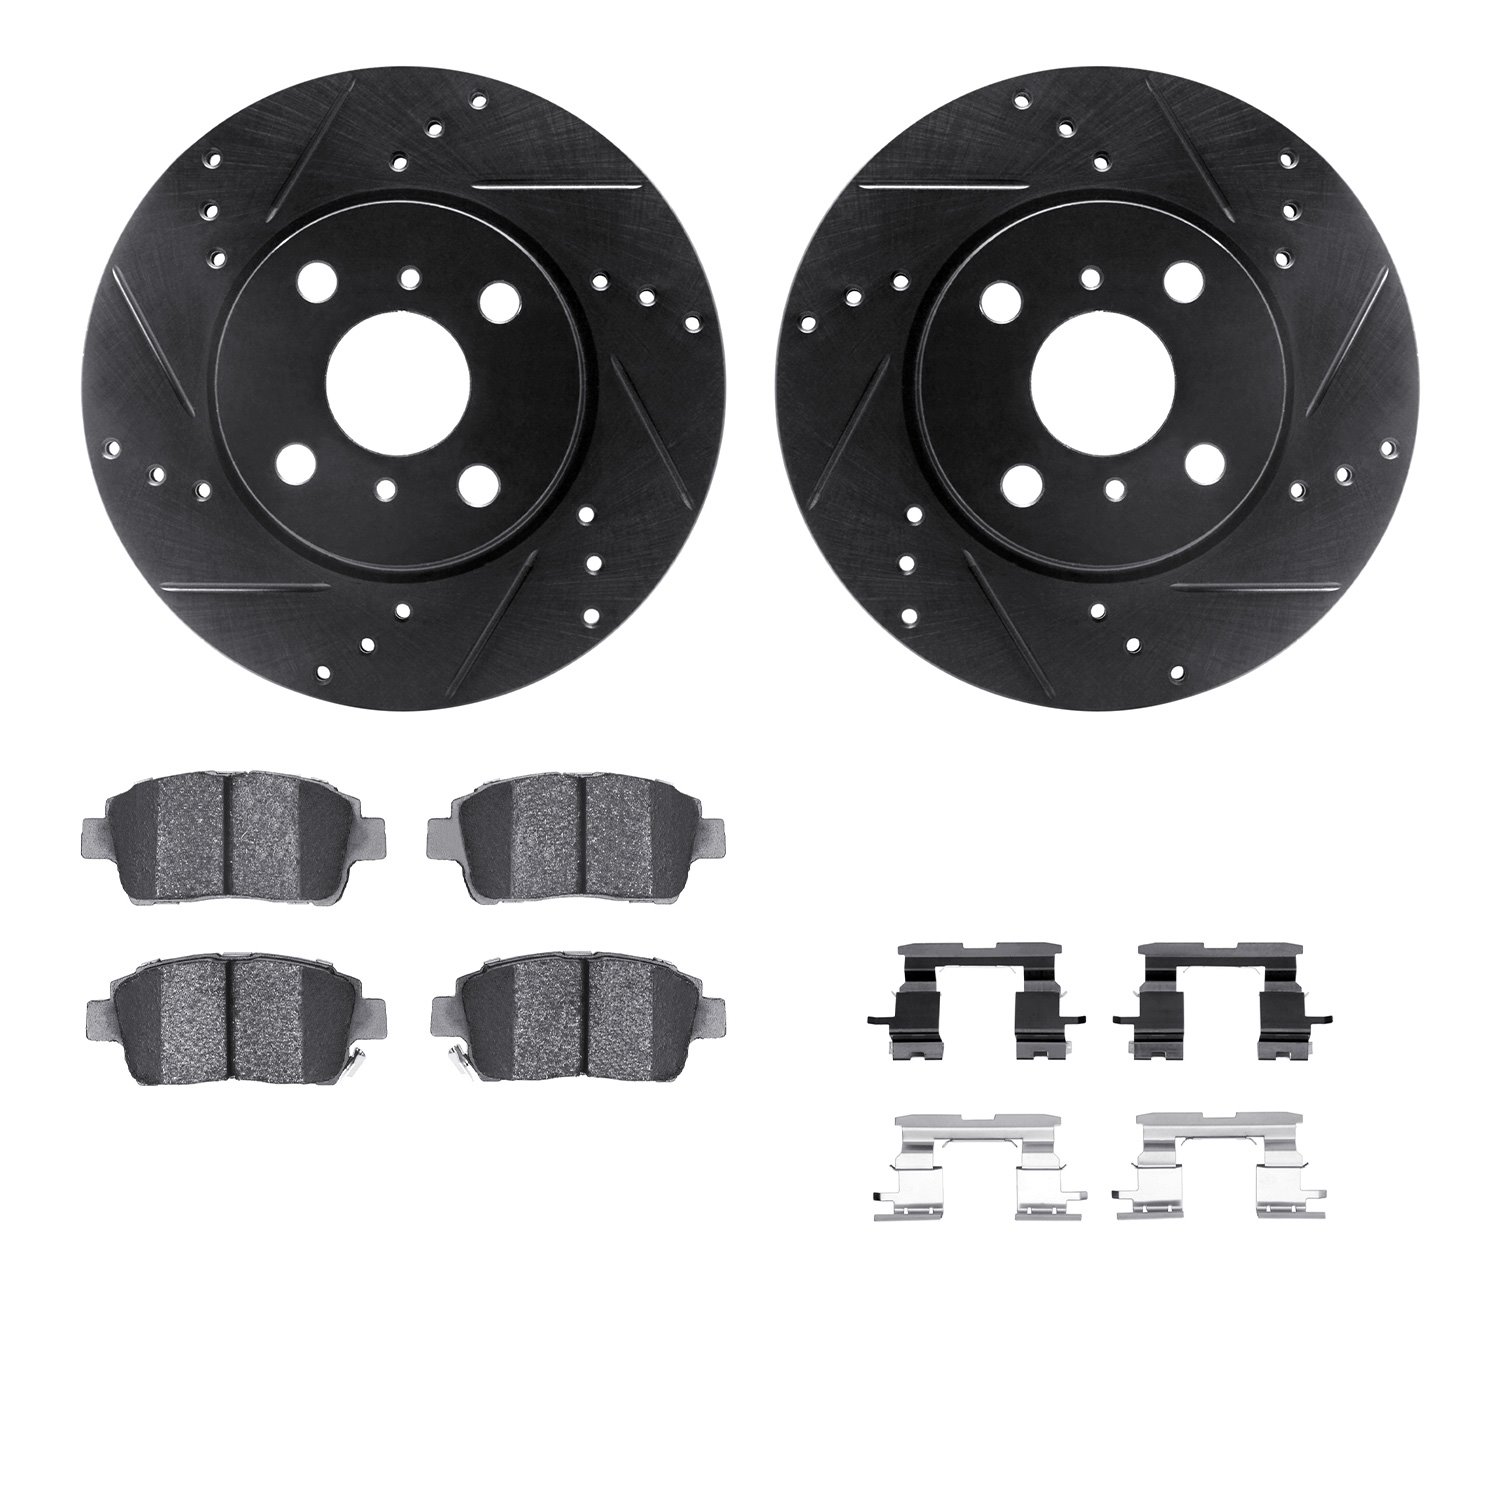 8312-91001 Drilled/Slotted Brake Rotors with 3000-Series Ceramic Brake Pads Kit & Hardware [Black], 2012-2015 Lexus/Toyota/Scion